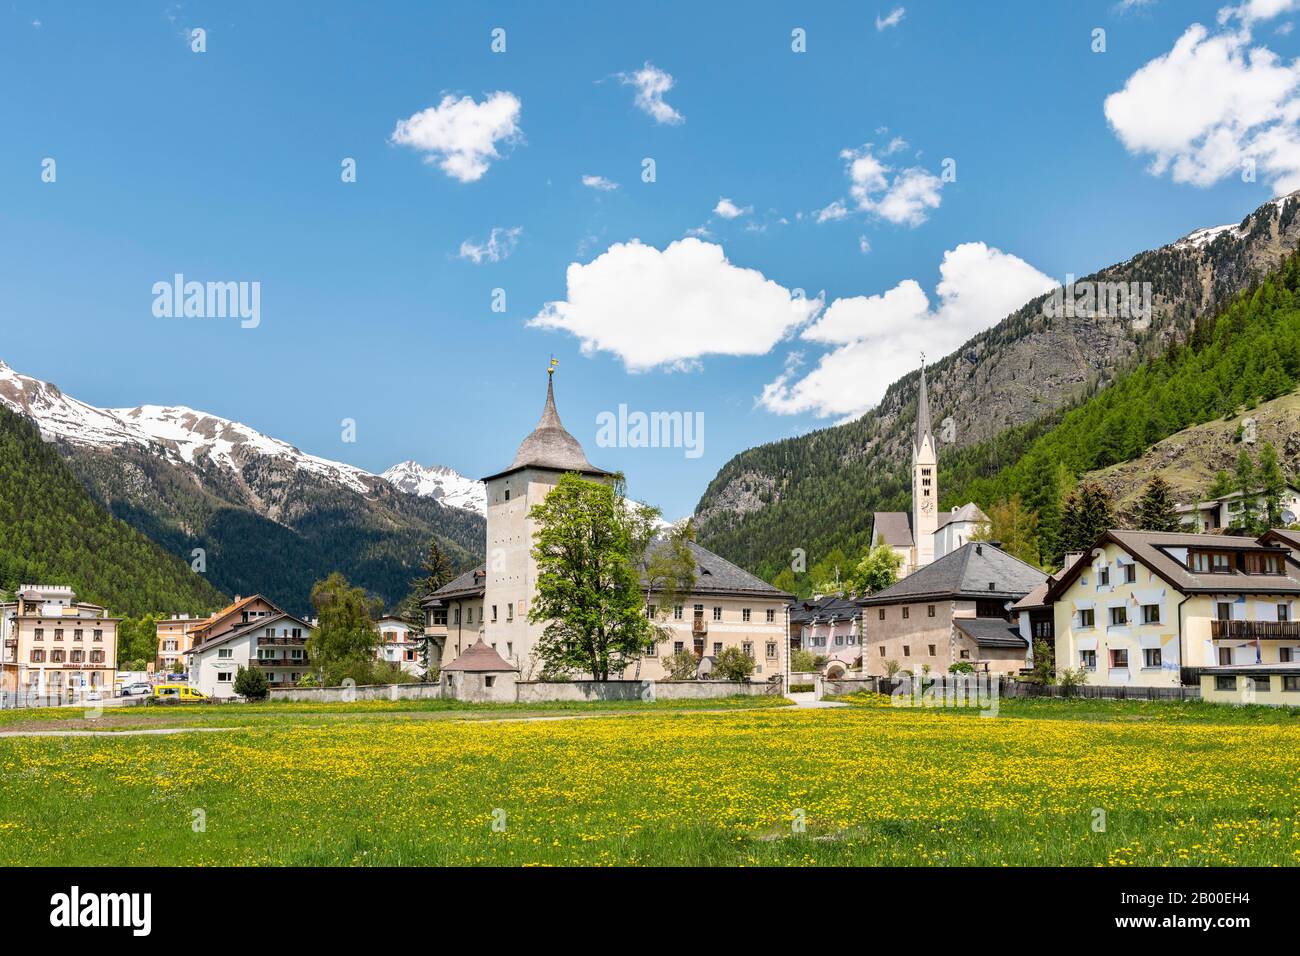 Village view of Zernez, Engadin, Canton Graubuenden, Switzerland Stock Photo